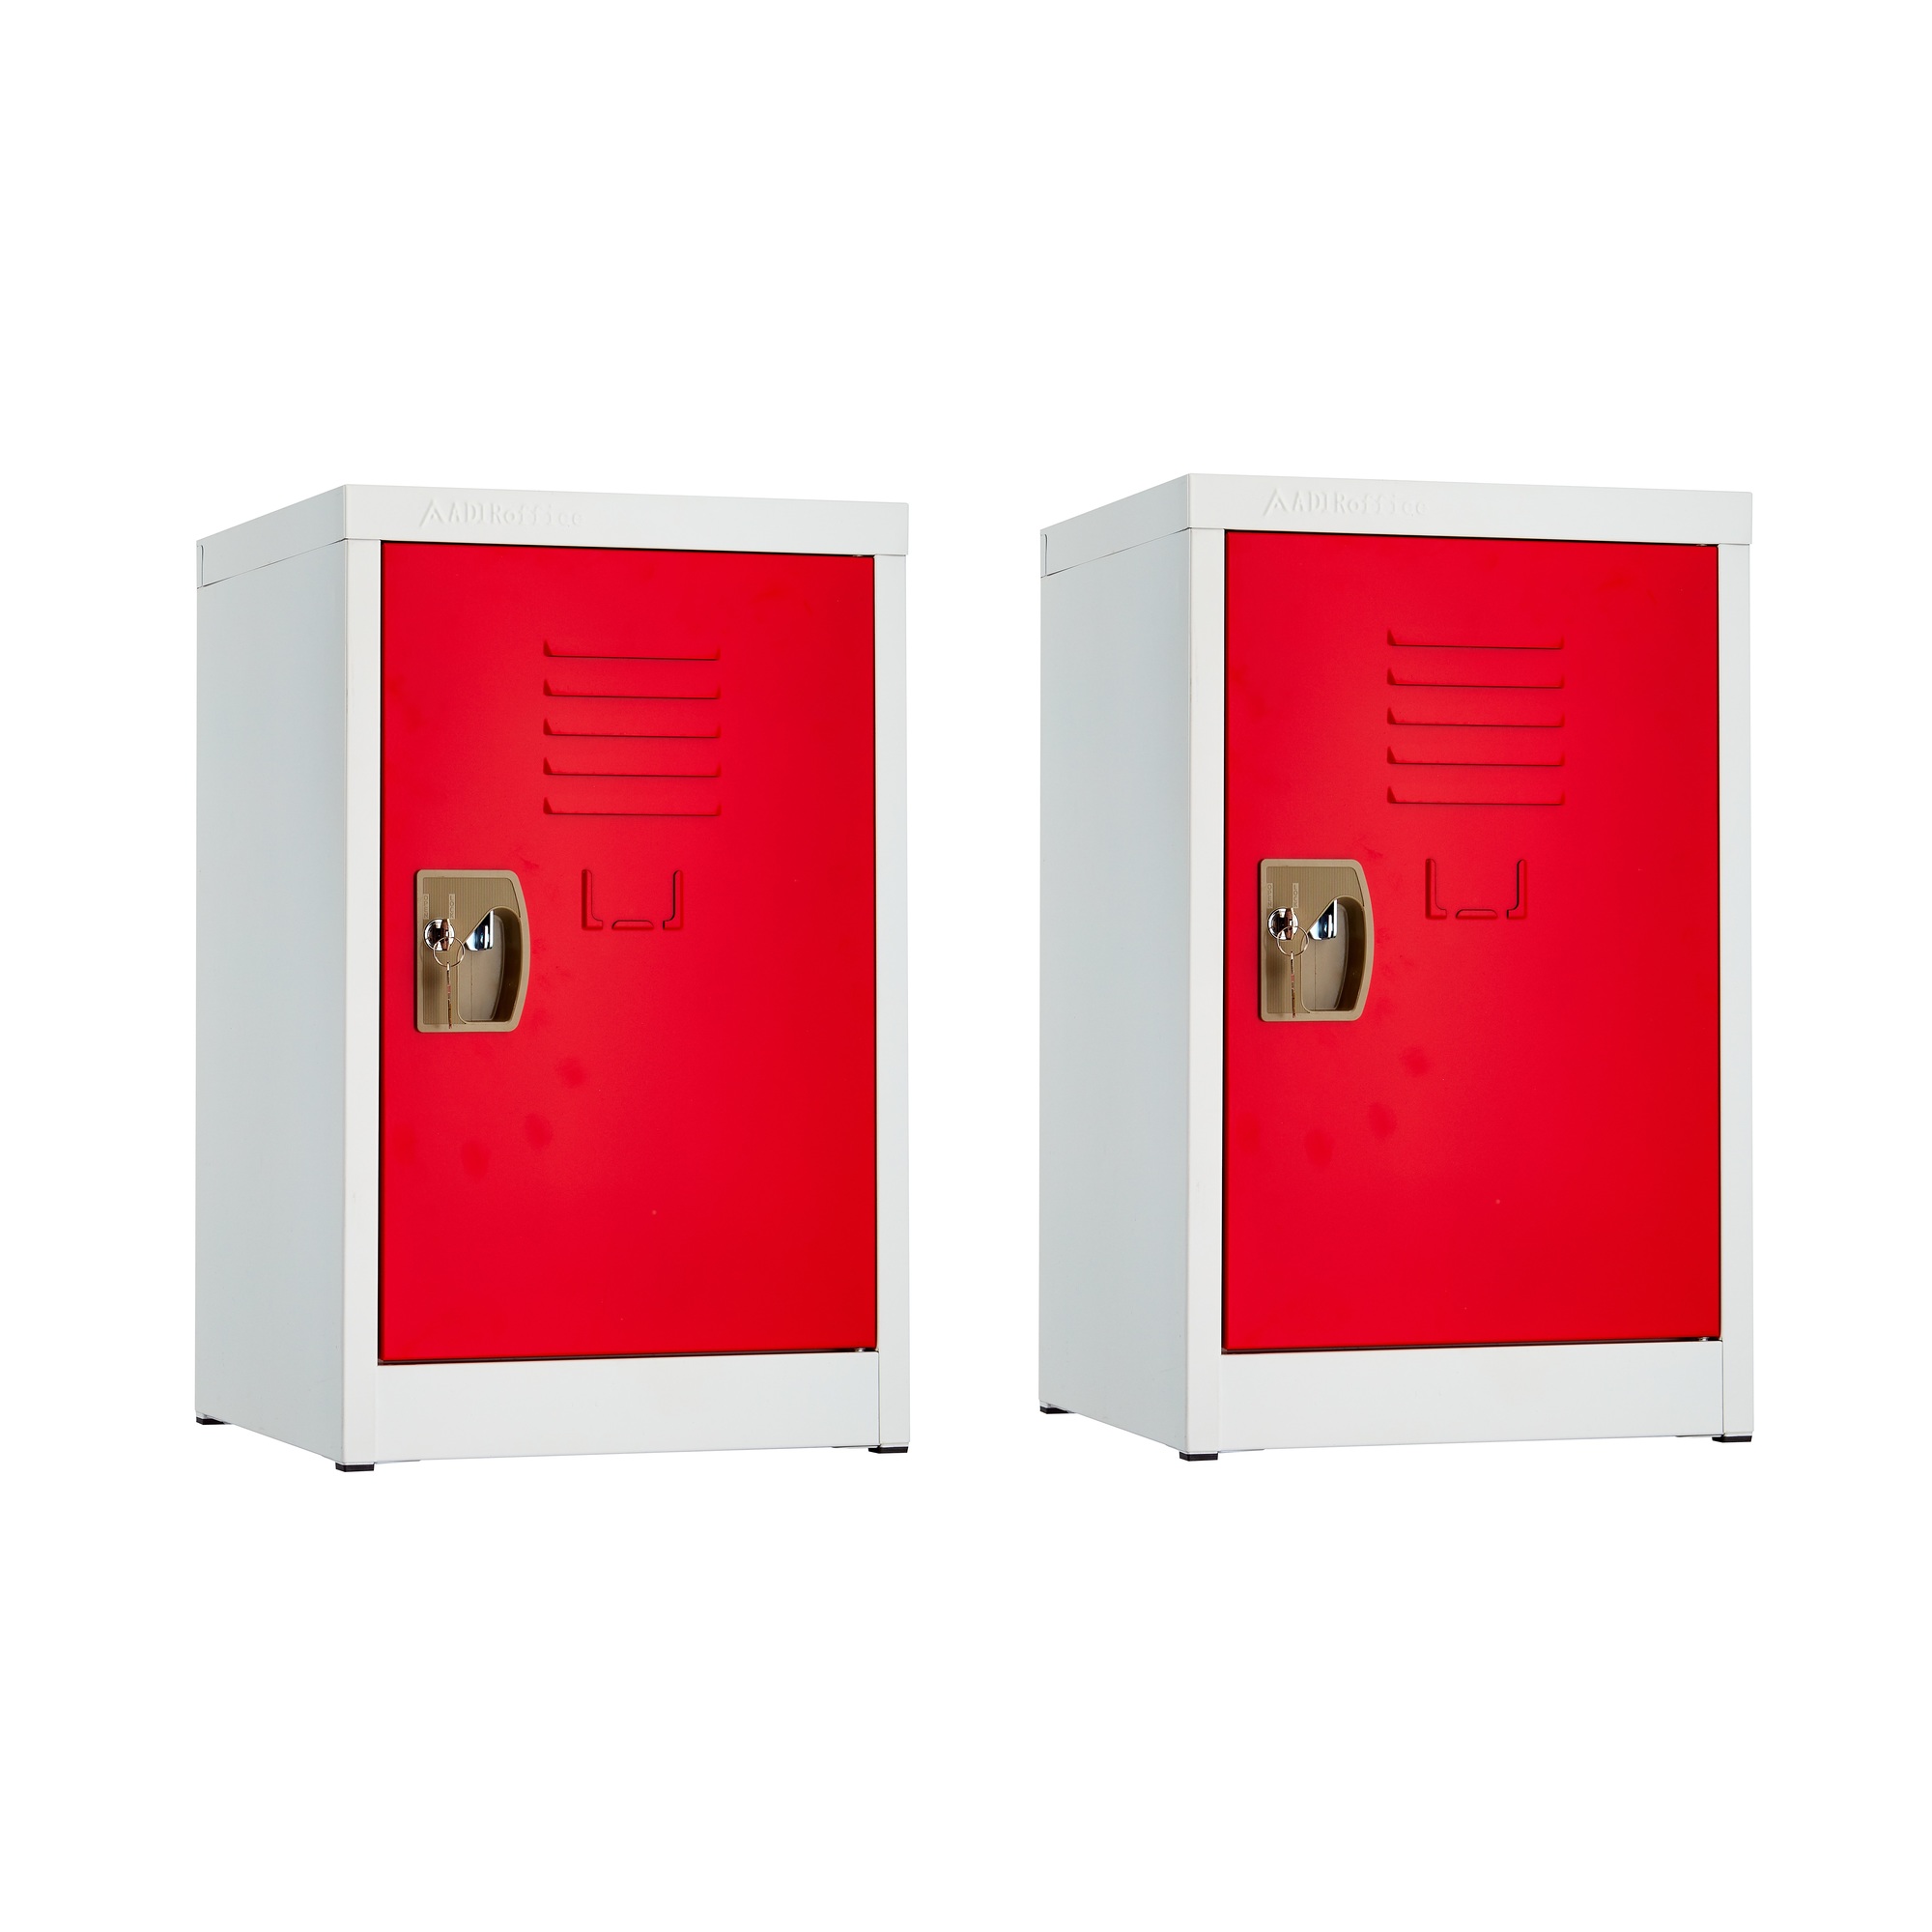 Alpine, 24ft.' Single Tier Locker for Kids â Red, 2-Pack, Height 24 in, Width 15 in, Color Red, Model ADI629-02-RED-2PK